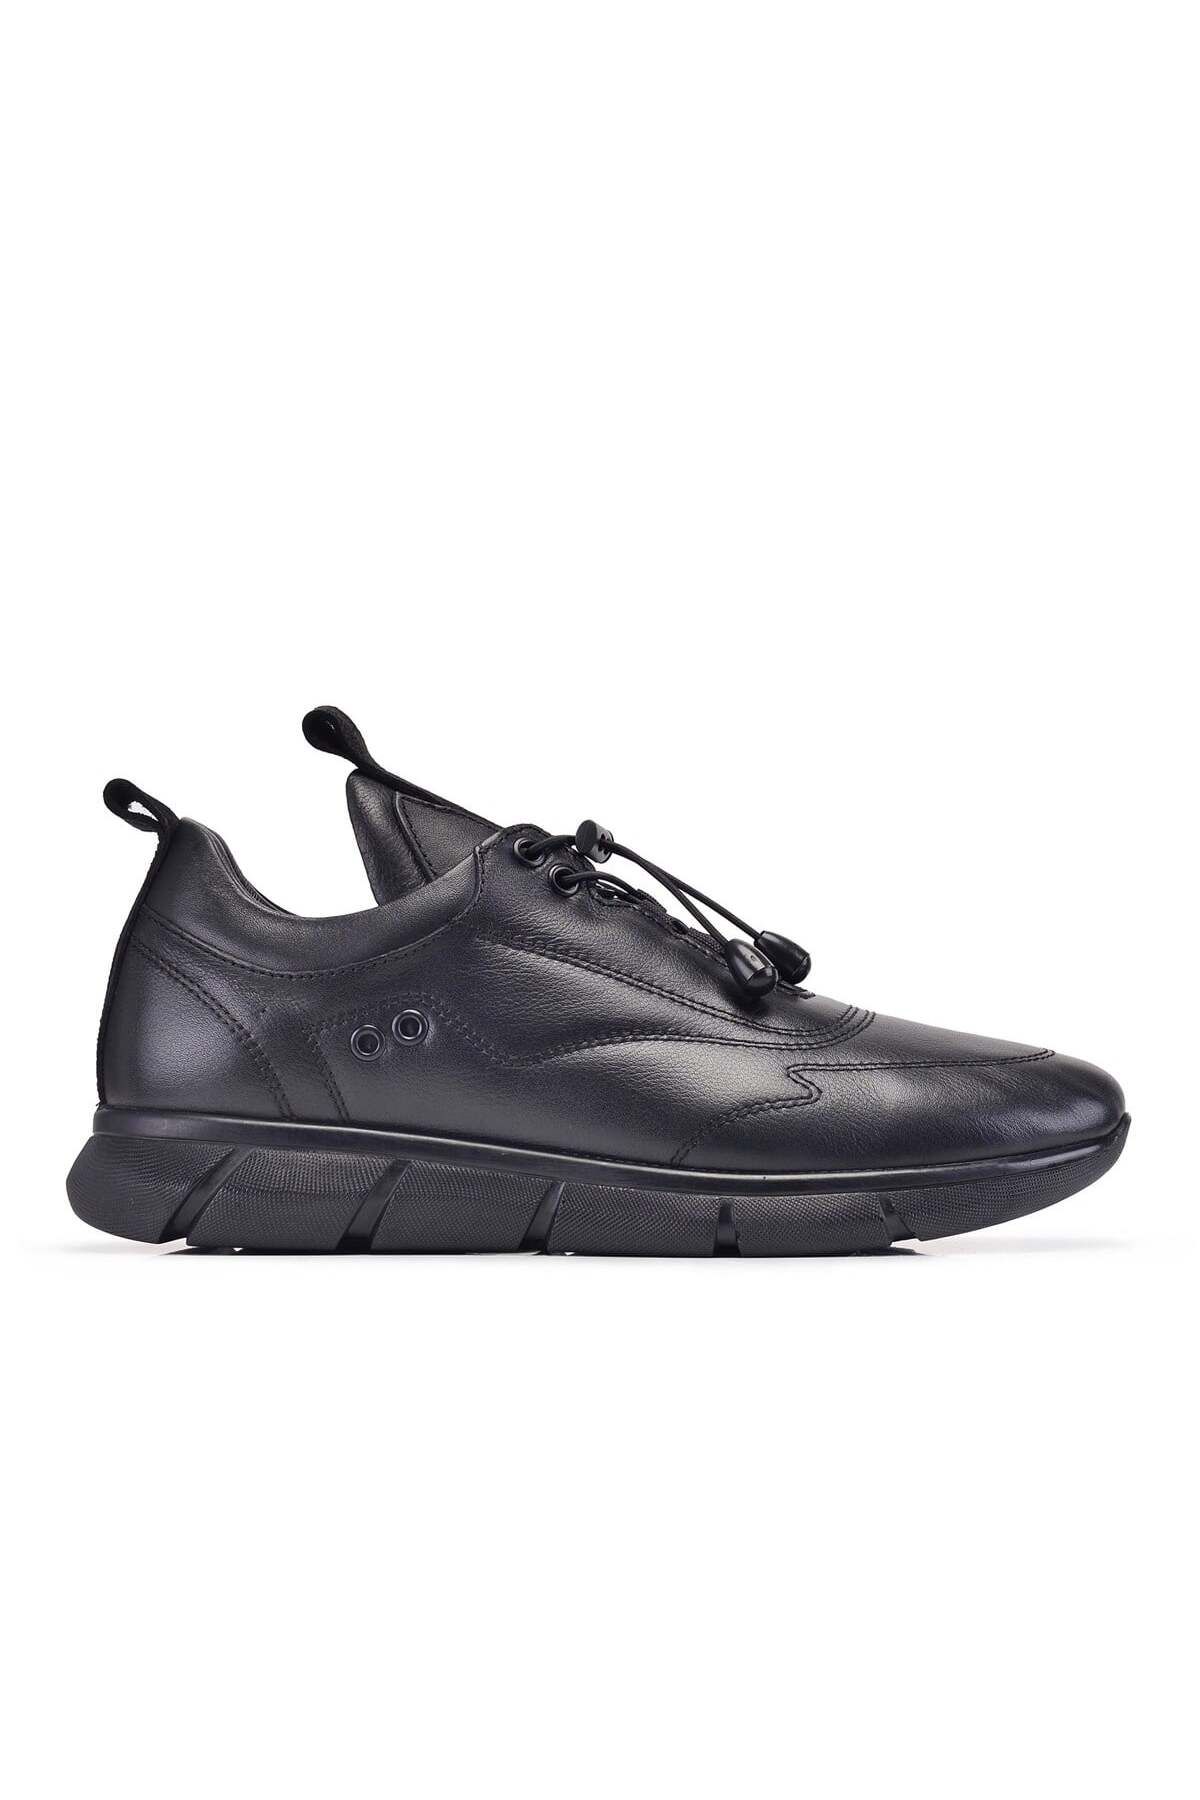 Nevzat Onay Siyah Sneaker Erkek Ayakkabı -12390-